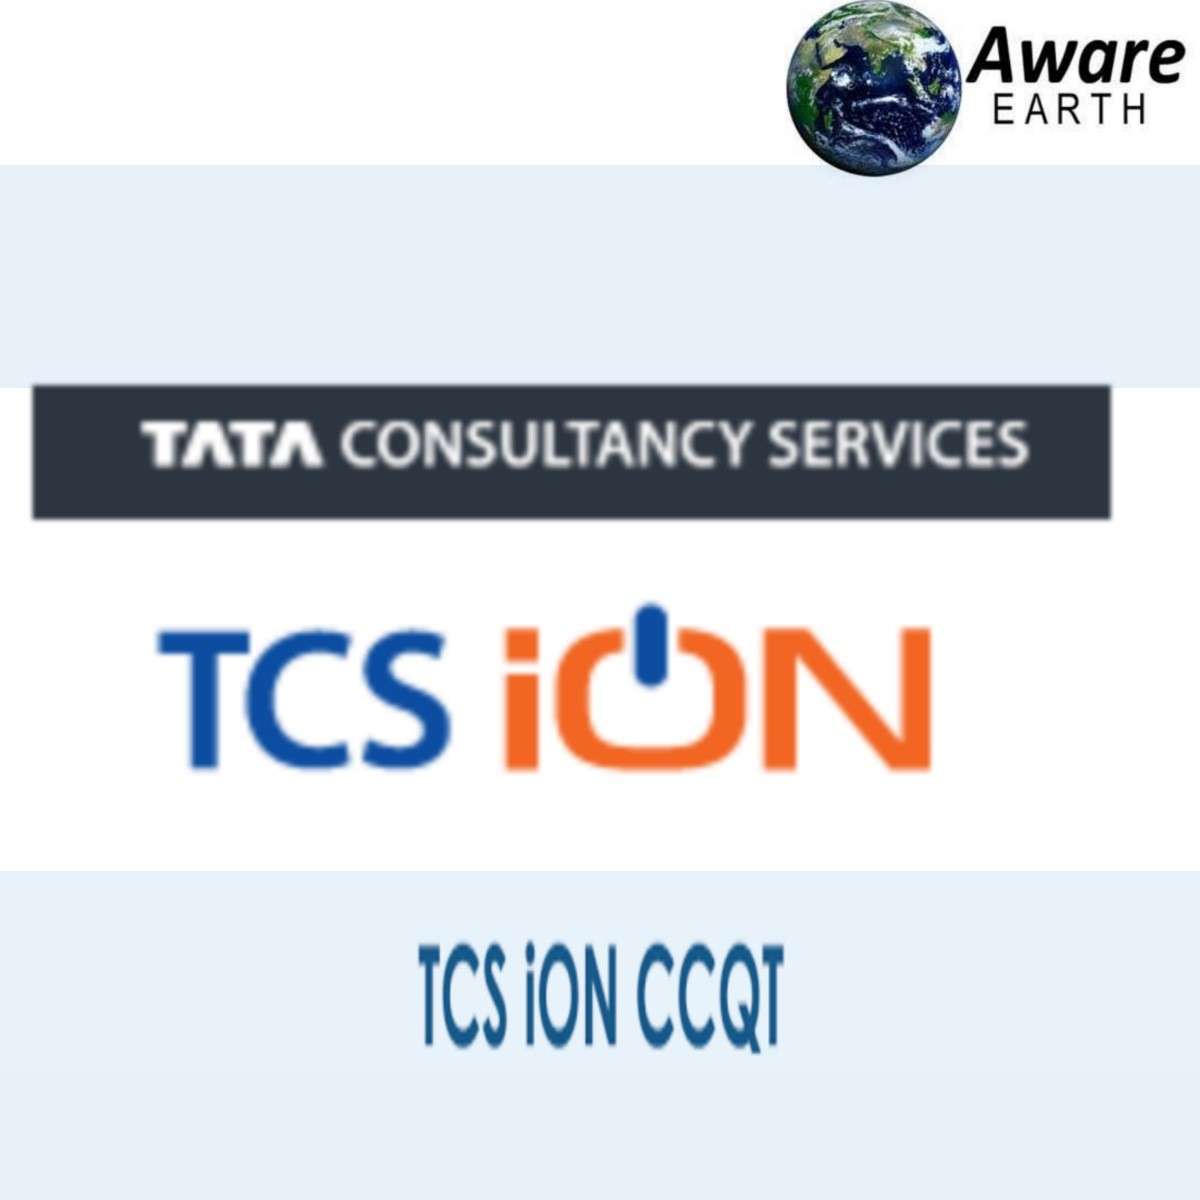 TCS ION CCQT